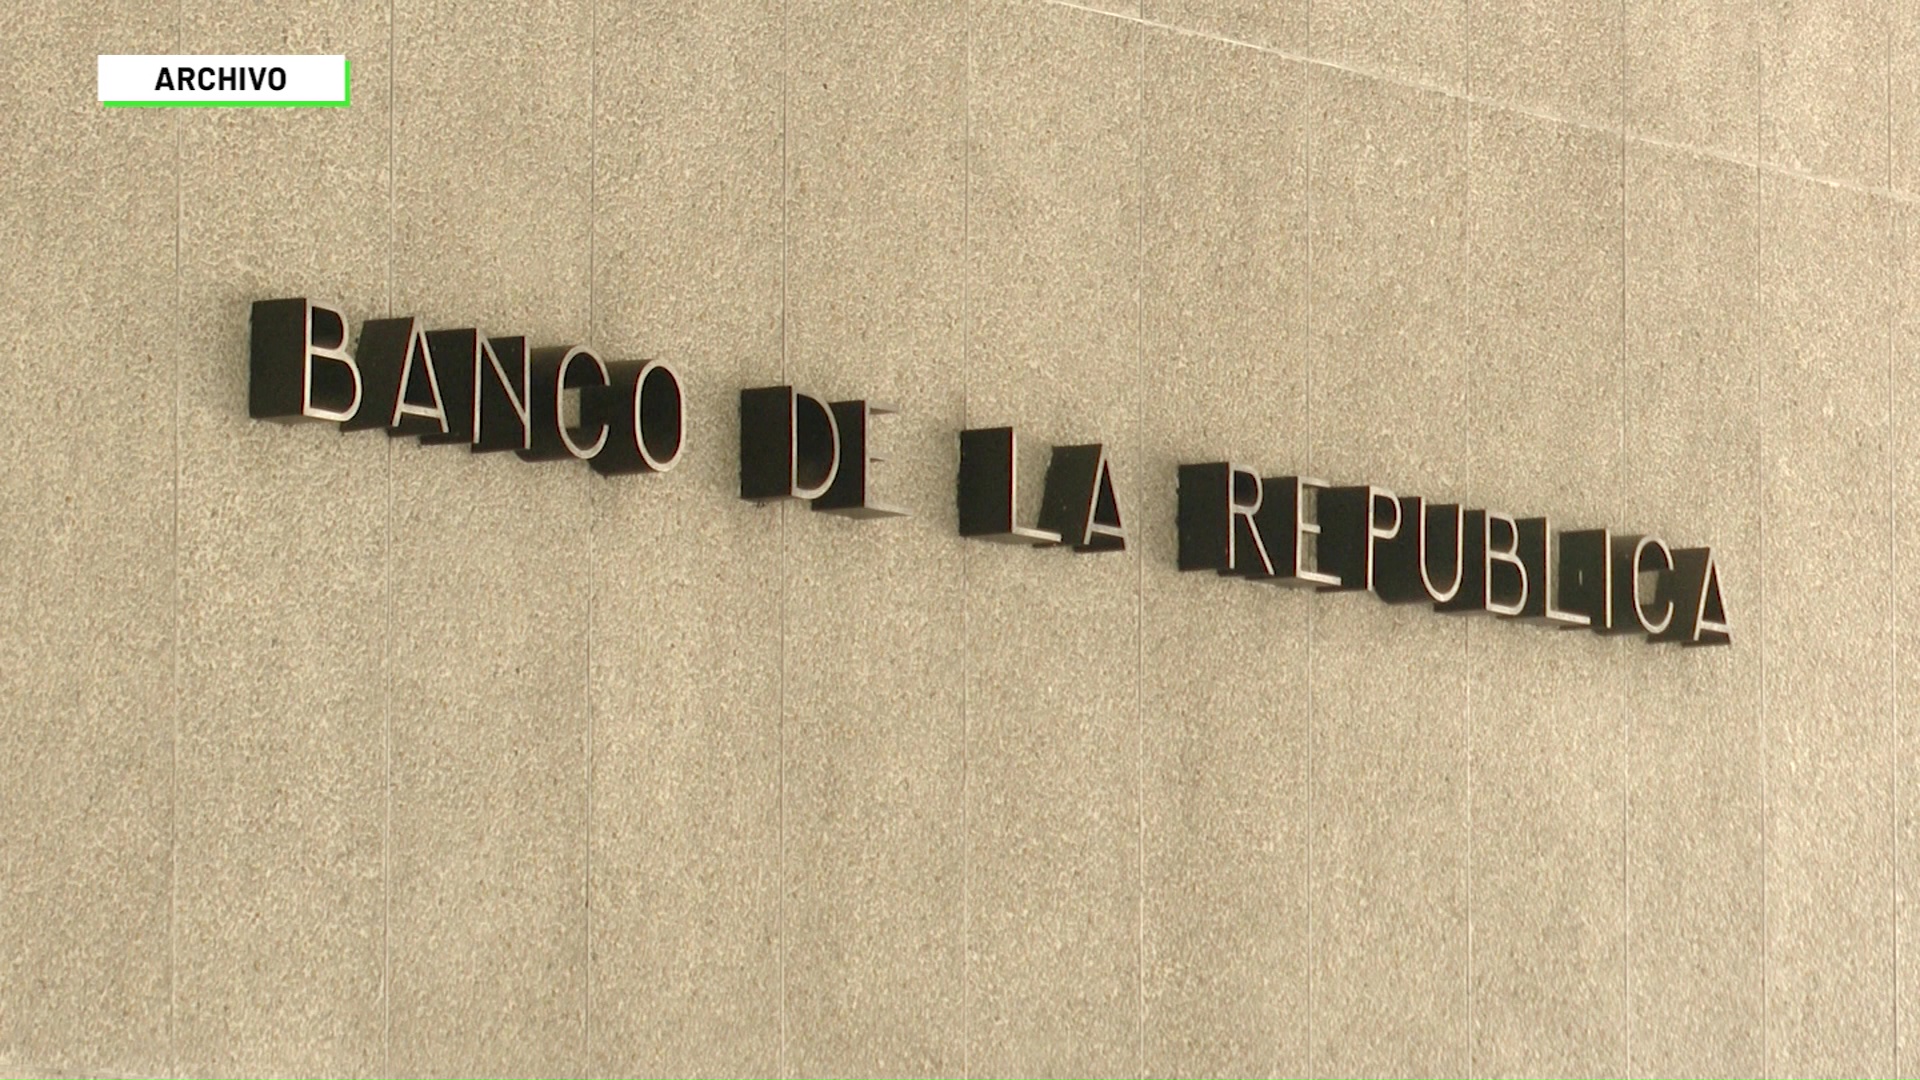 Banco de la República bajó tasas de interés